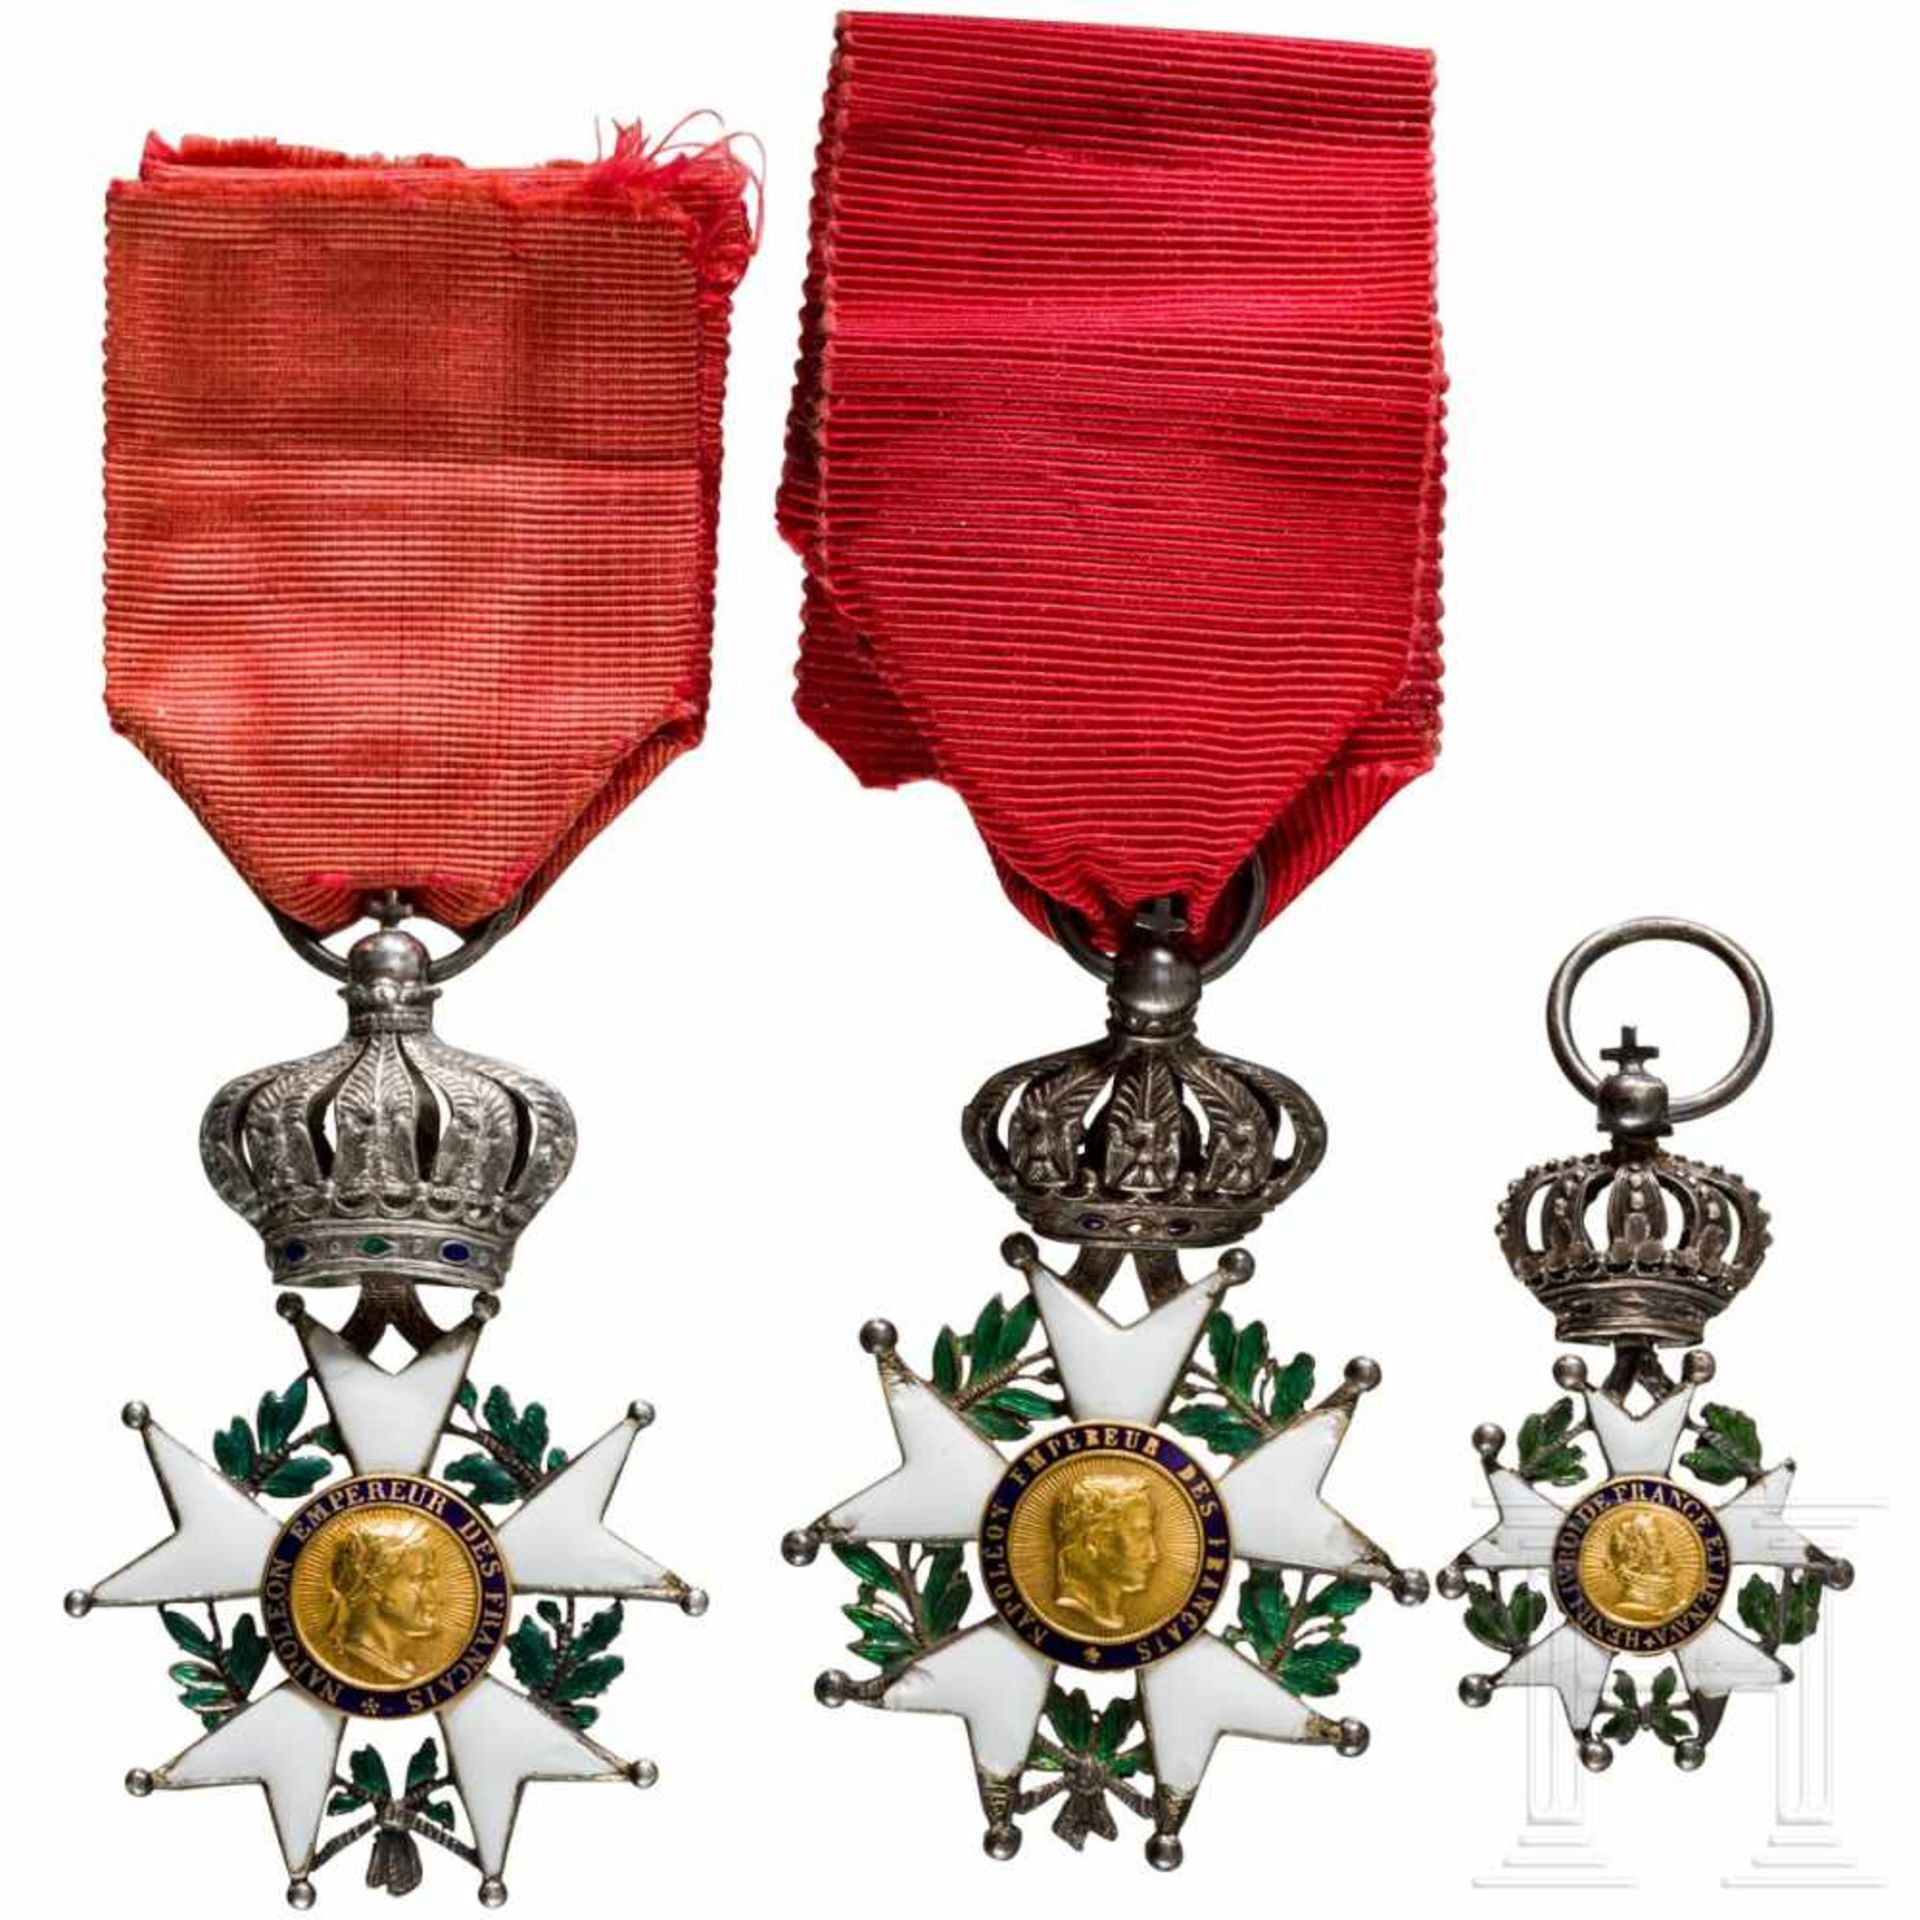 Three Orders of the Legion of Honour, 19th centuryDetailliert gefertigtes Ordenskreuz der